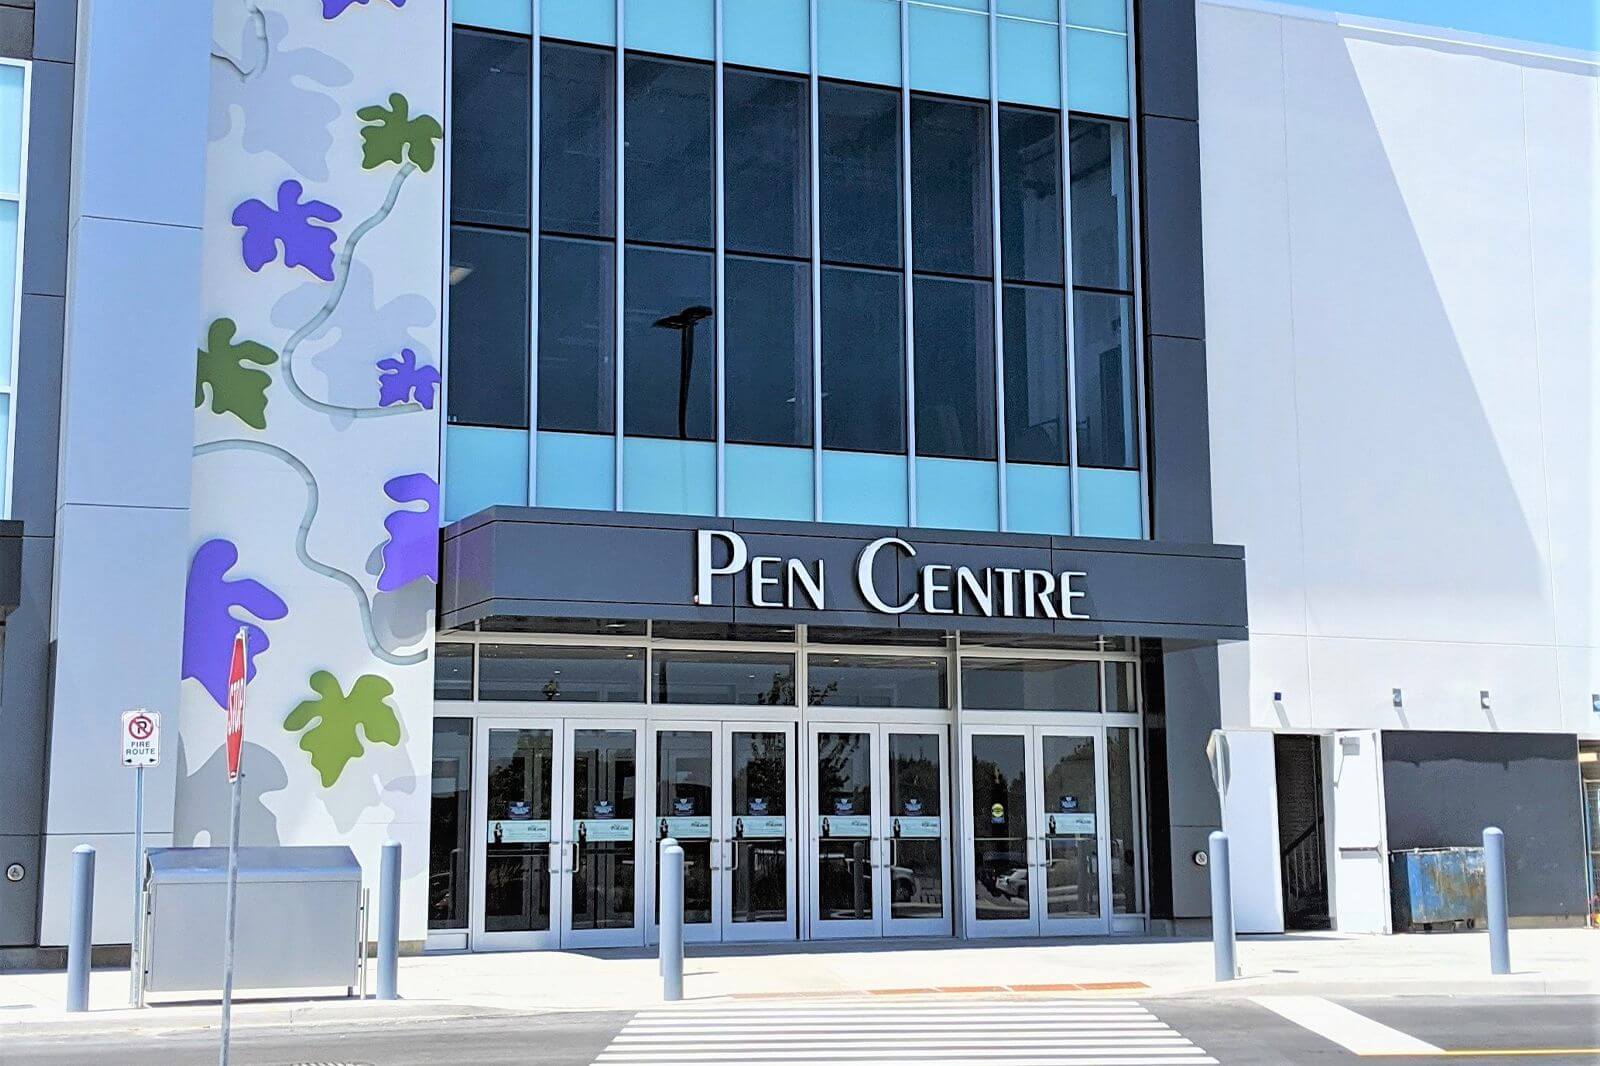 Pen Centre